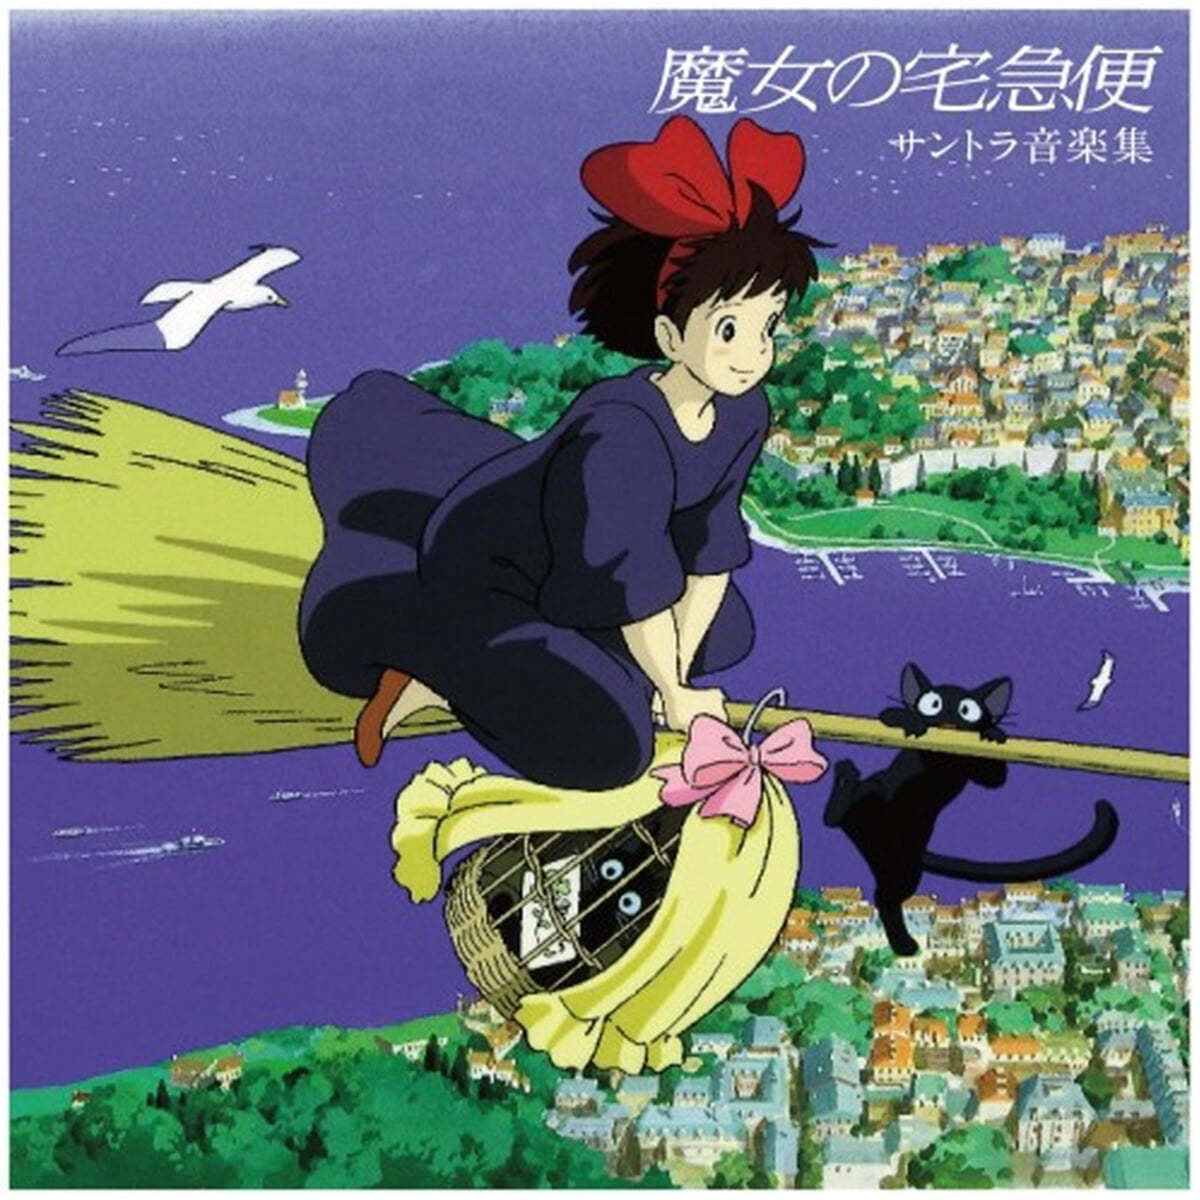 마녀 배달부 키키 영화음악 (Kiki's Delivery Service OST by Hisaishi Joe) [투명 옐로우 컬러 LP] 